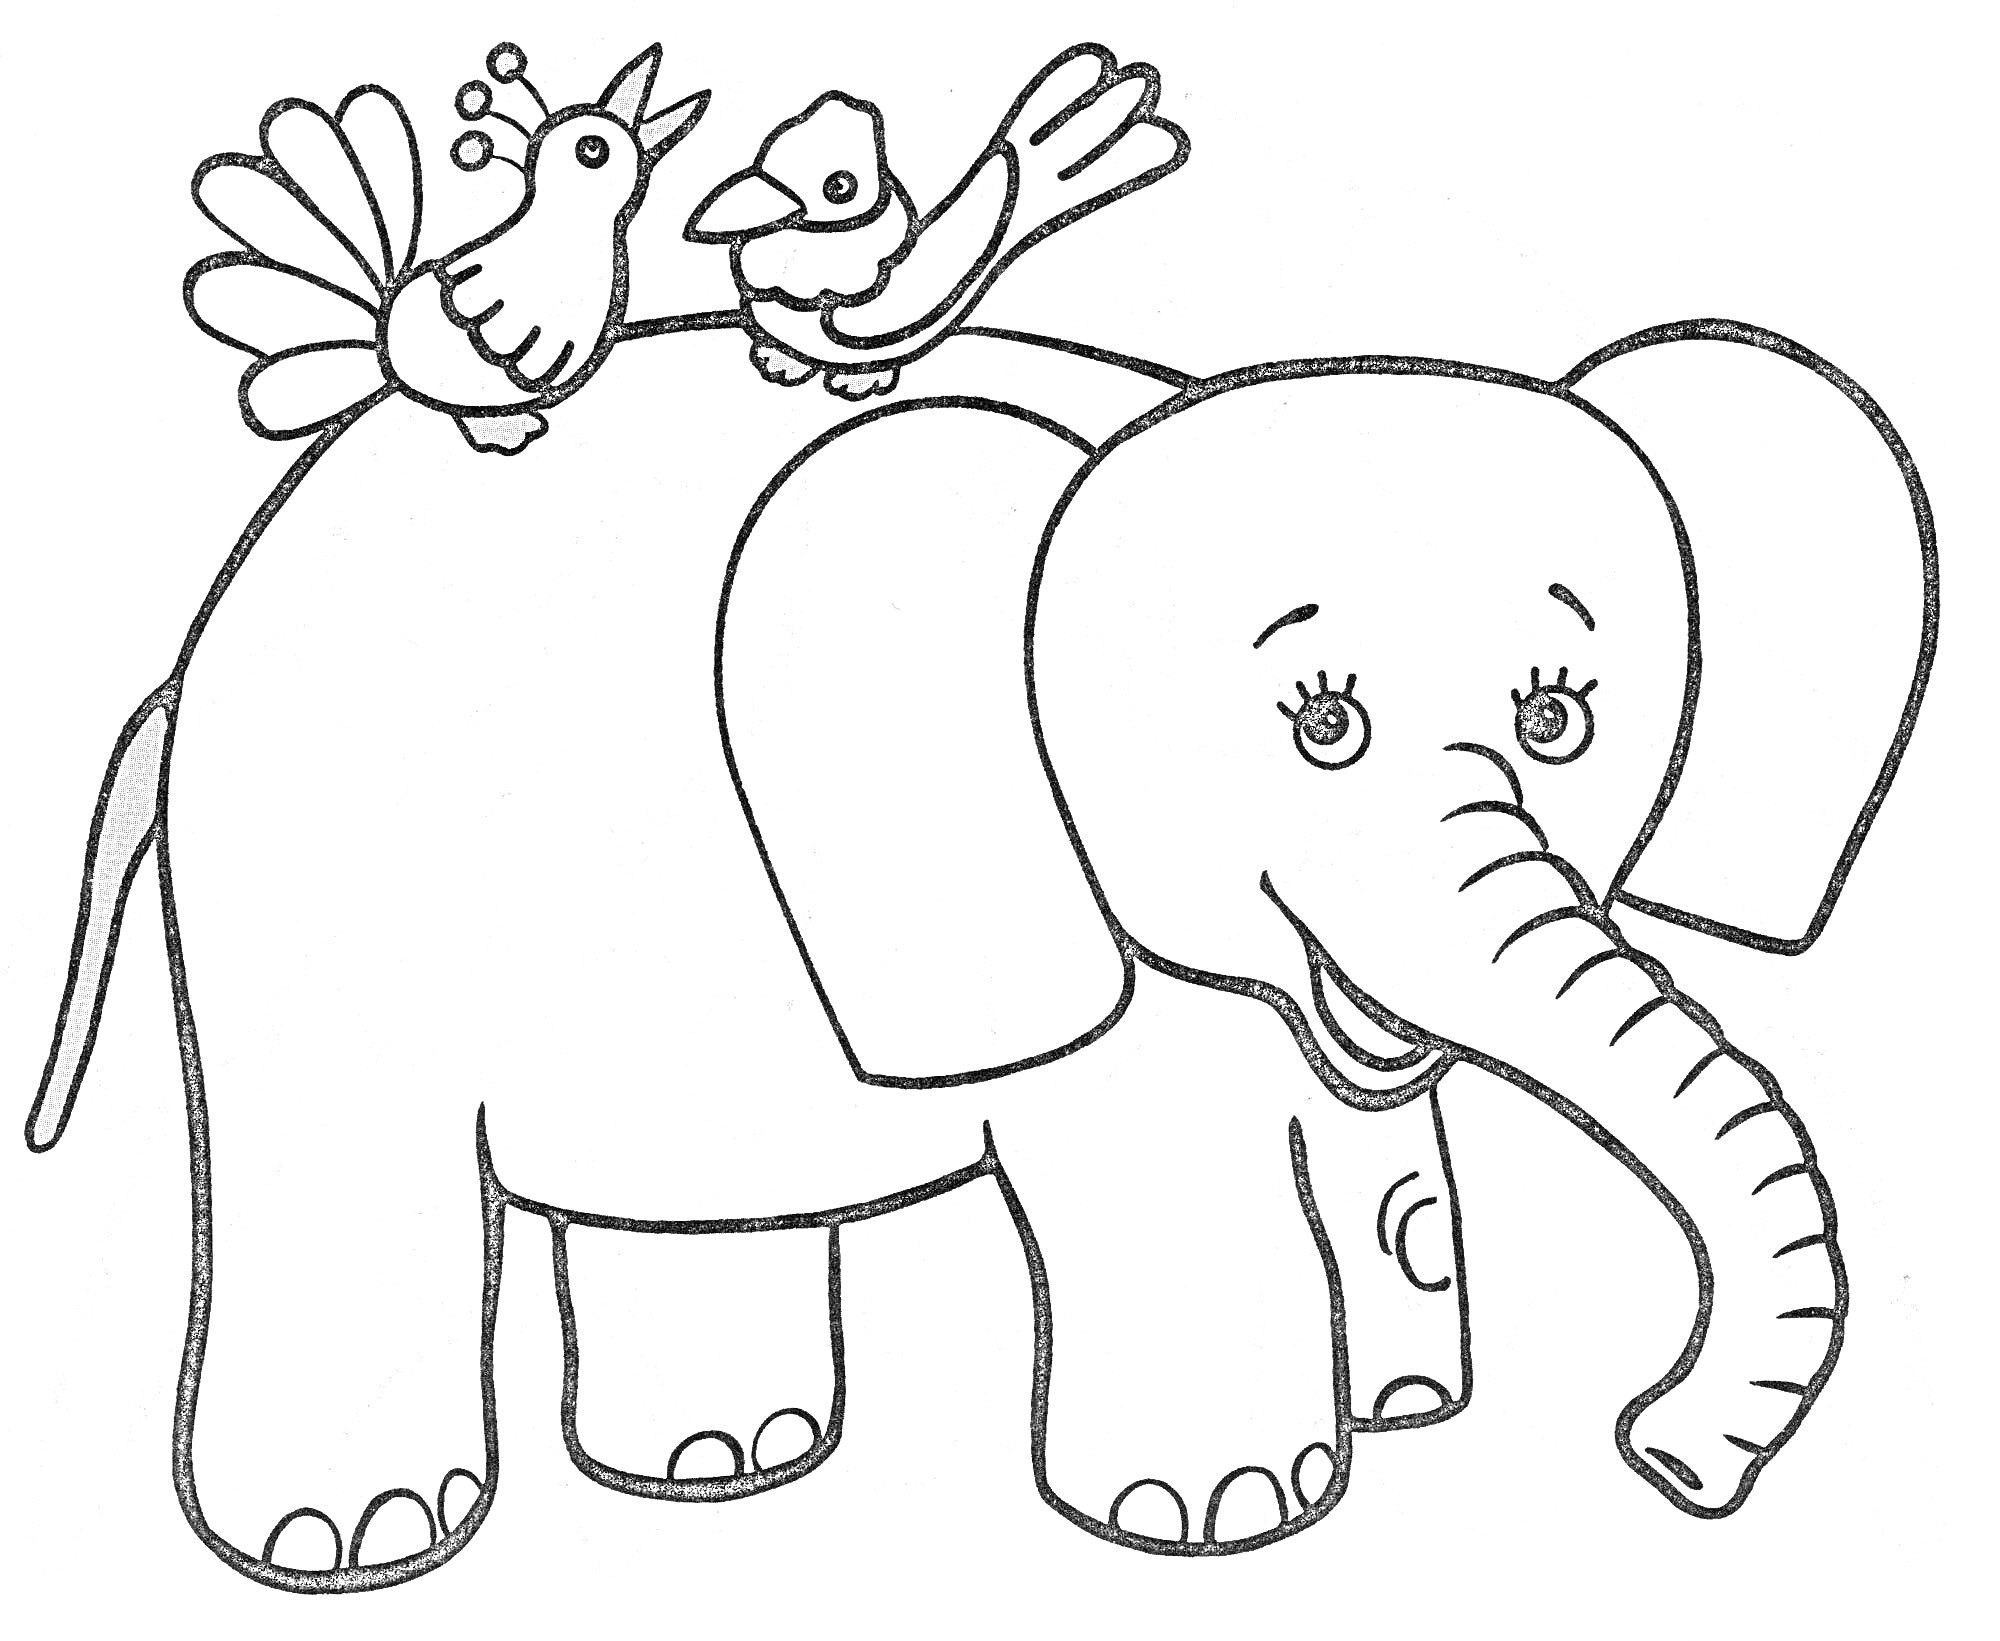 Слон с двумя птицами на спине